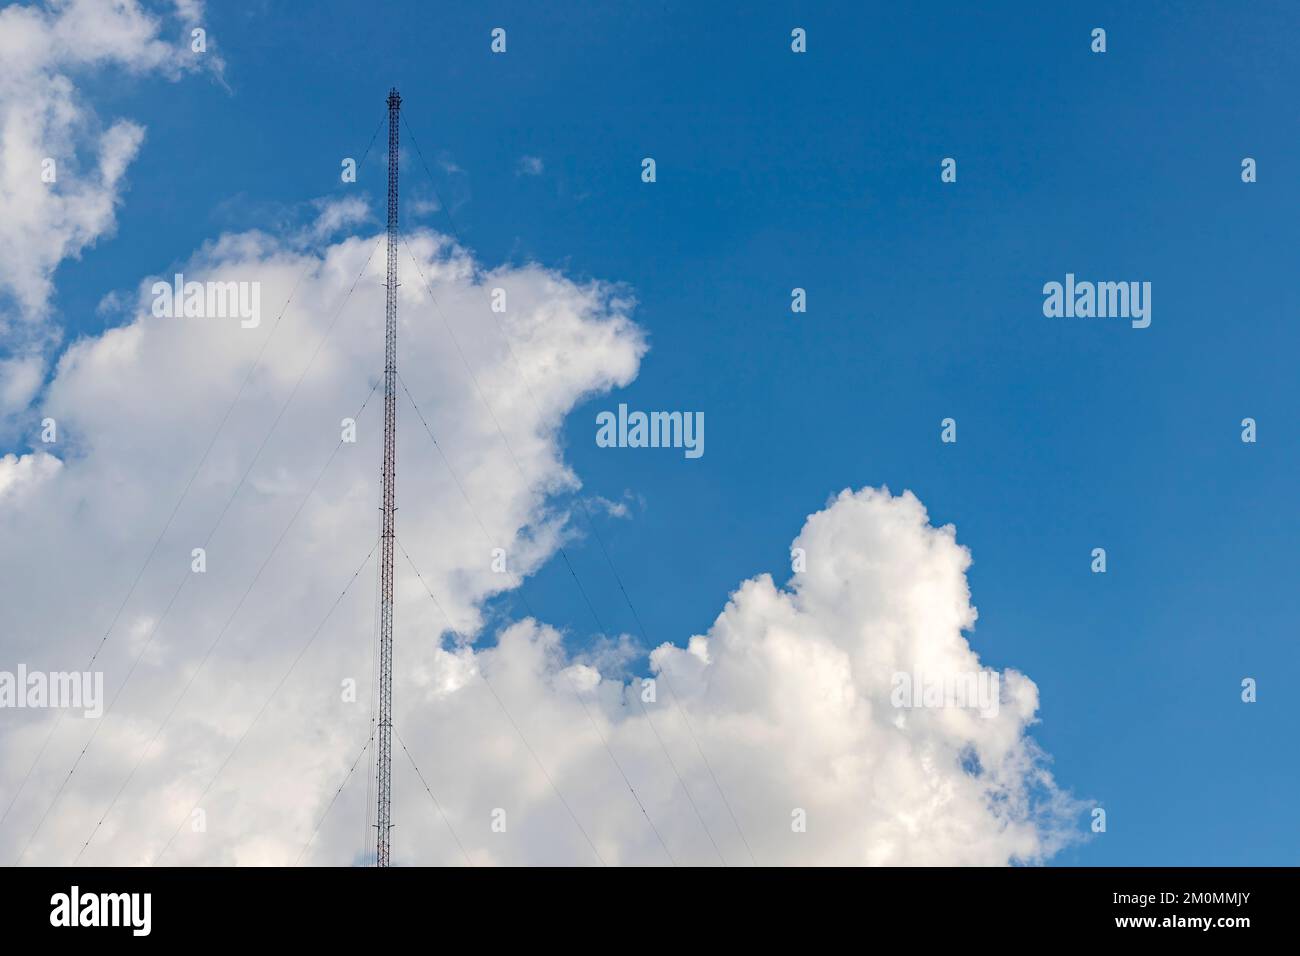 Auf der linken Seite des Bildes befindet sich eine Radioantenne aus Stahlrahmen mit einer Schlinge am Boden. Der Hintergrund ist ein hellblauer Himmel mit Stockfoto